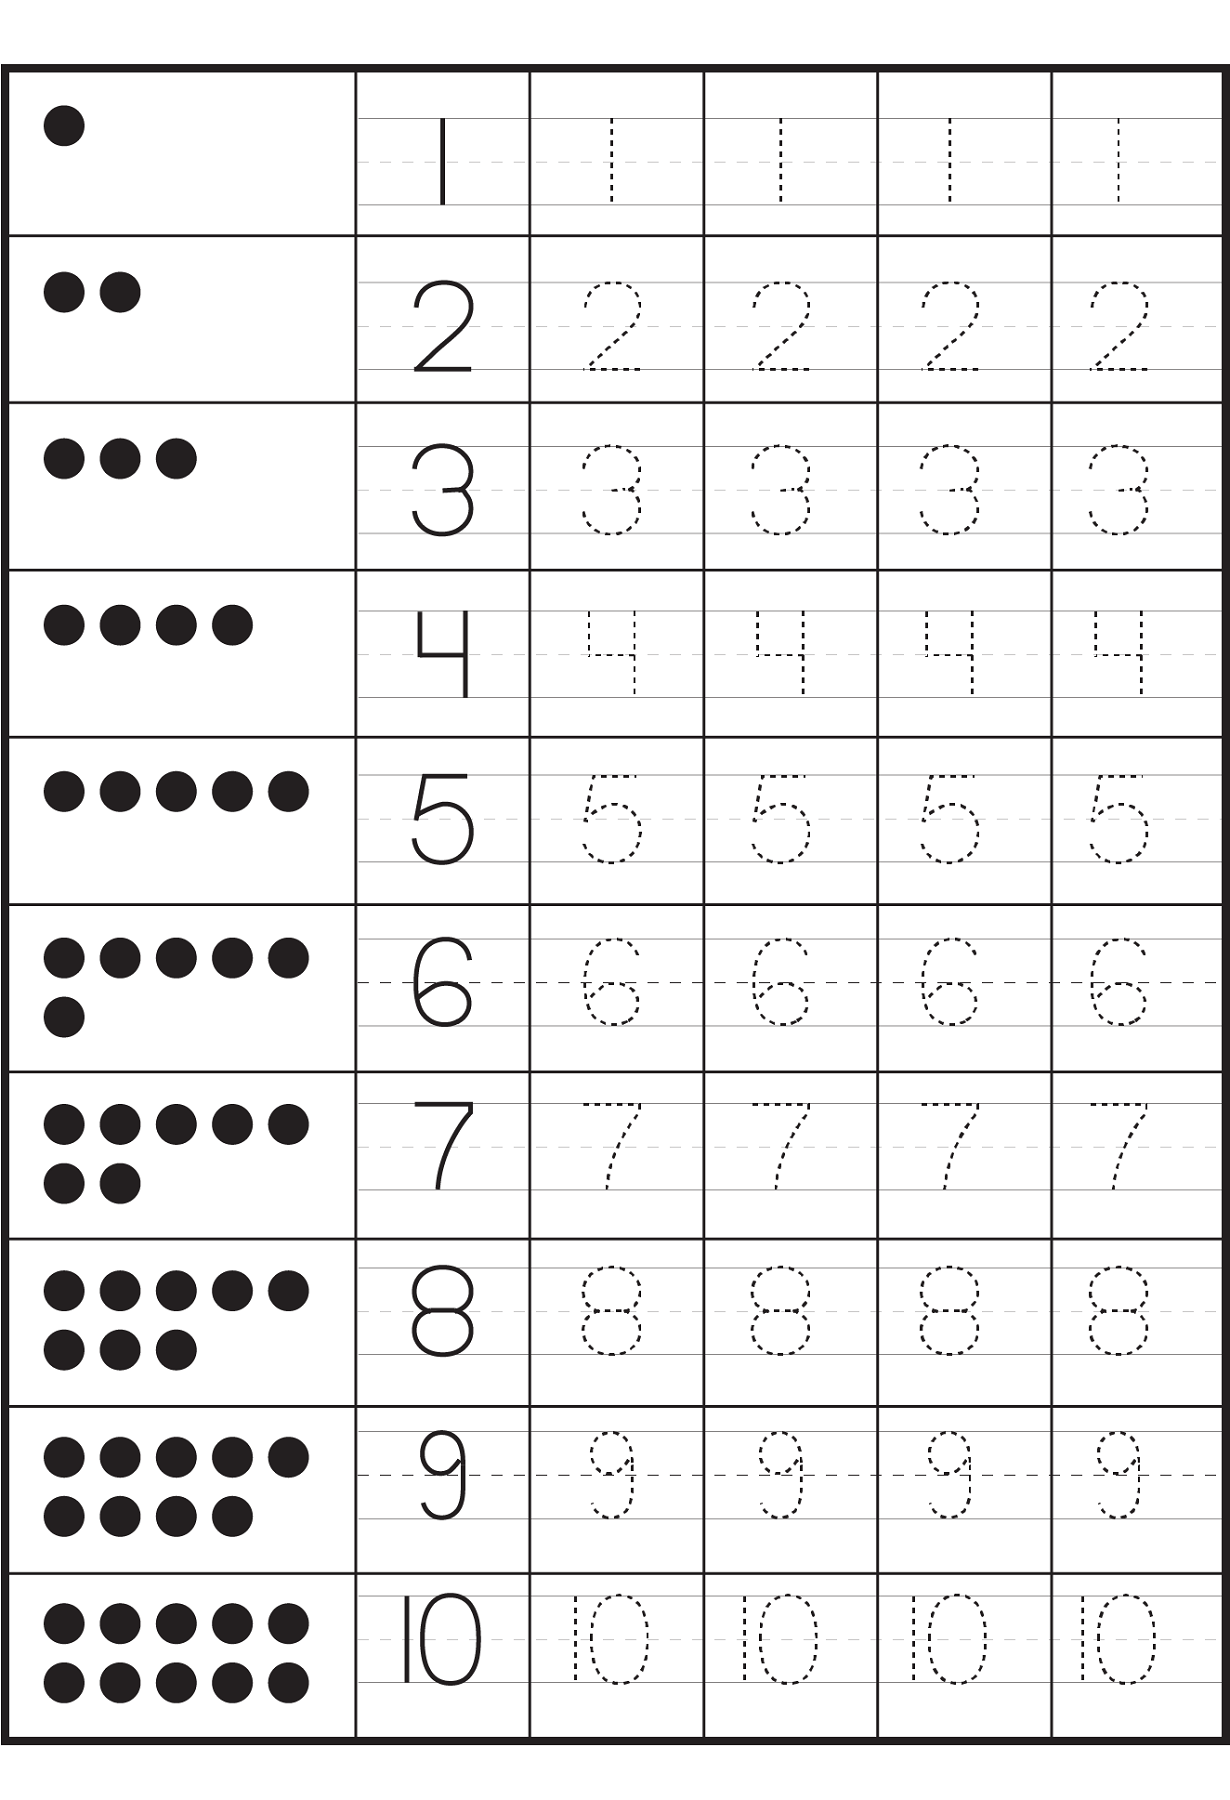 tracing-numbers-1-10-worksheet-learning-printable-free-printable